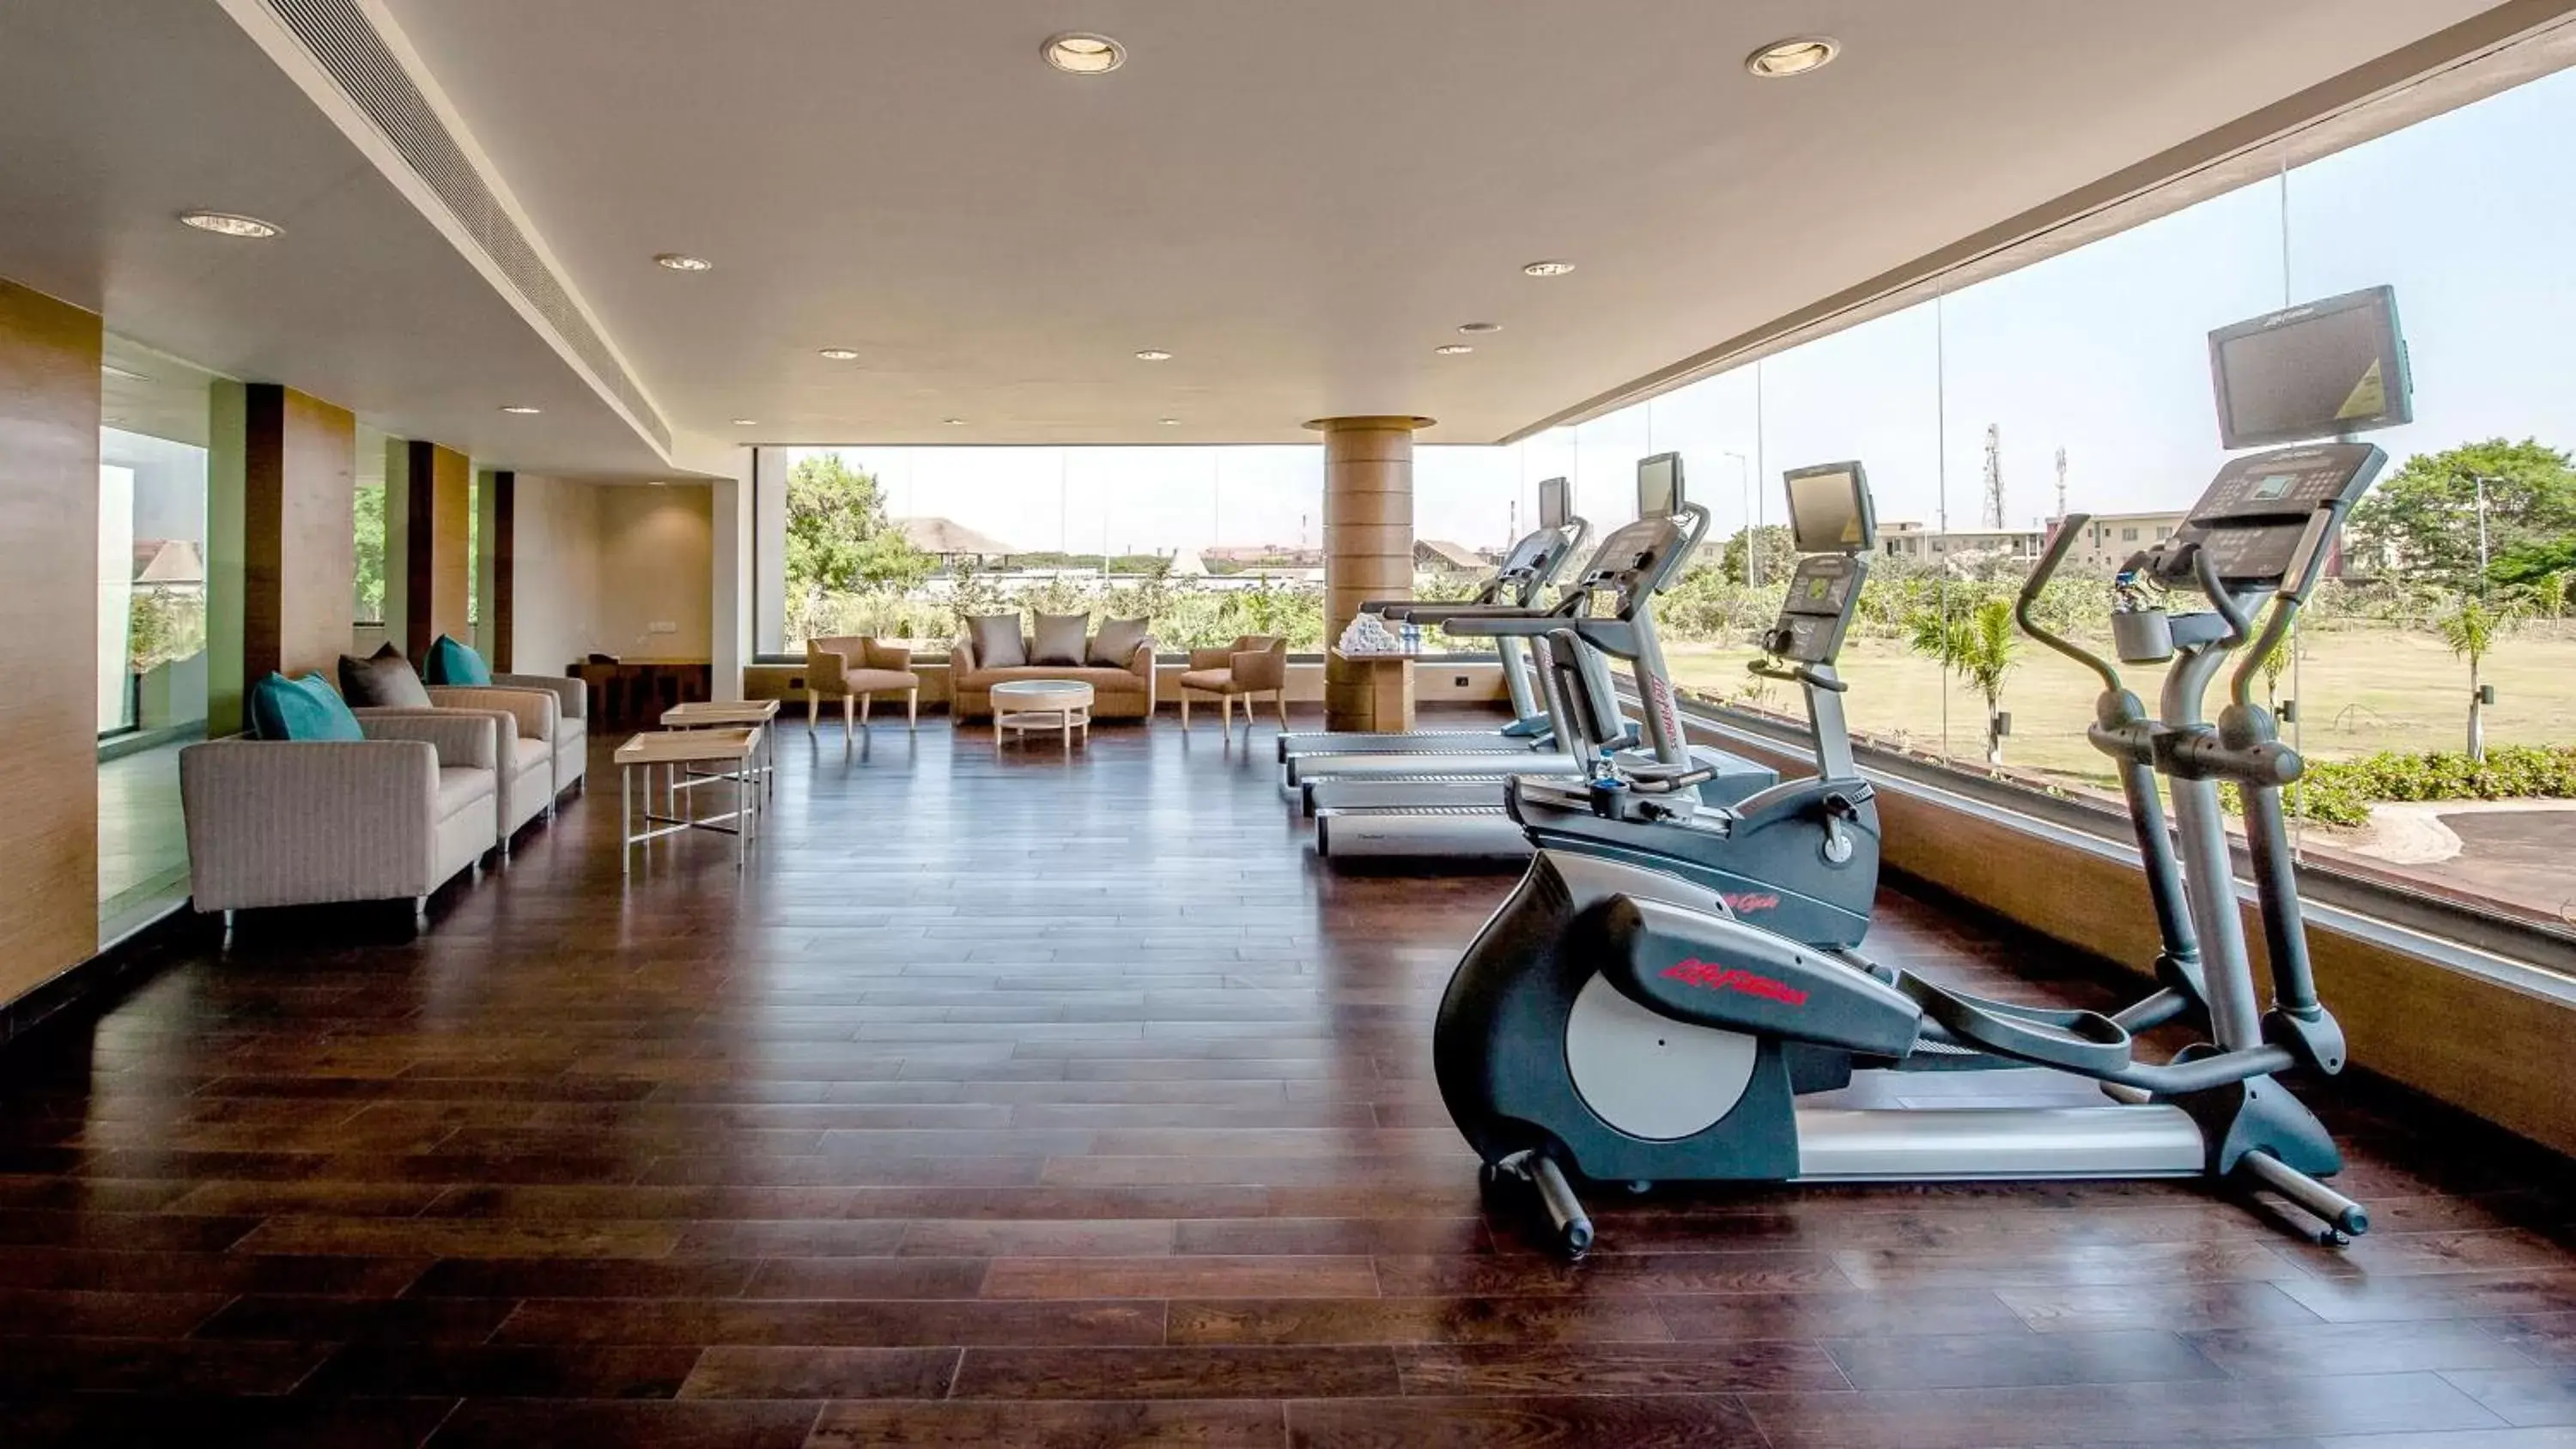 Fitness centre/facilities, Fitness Center/Facilities in Hyatt Place Hampi